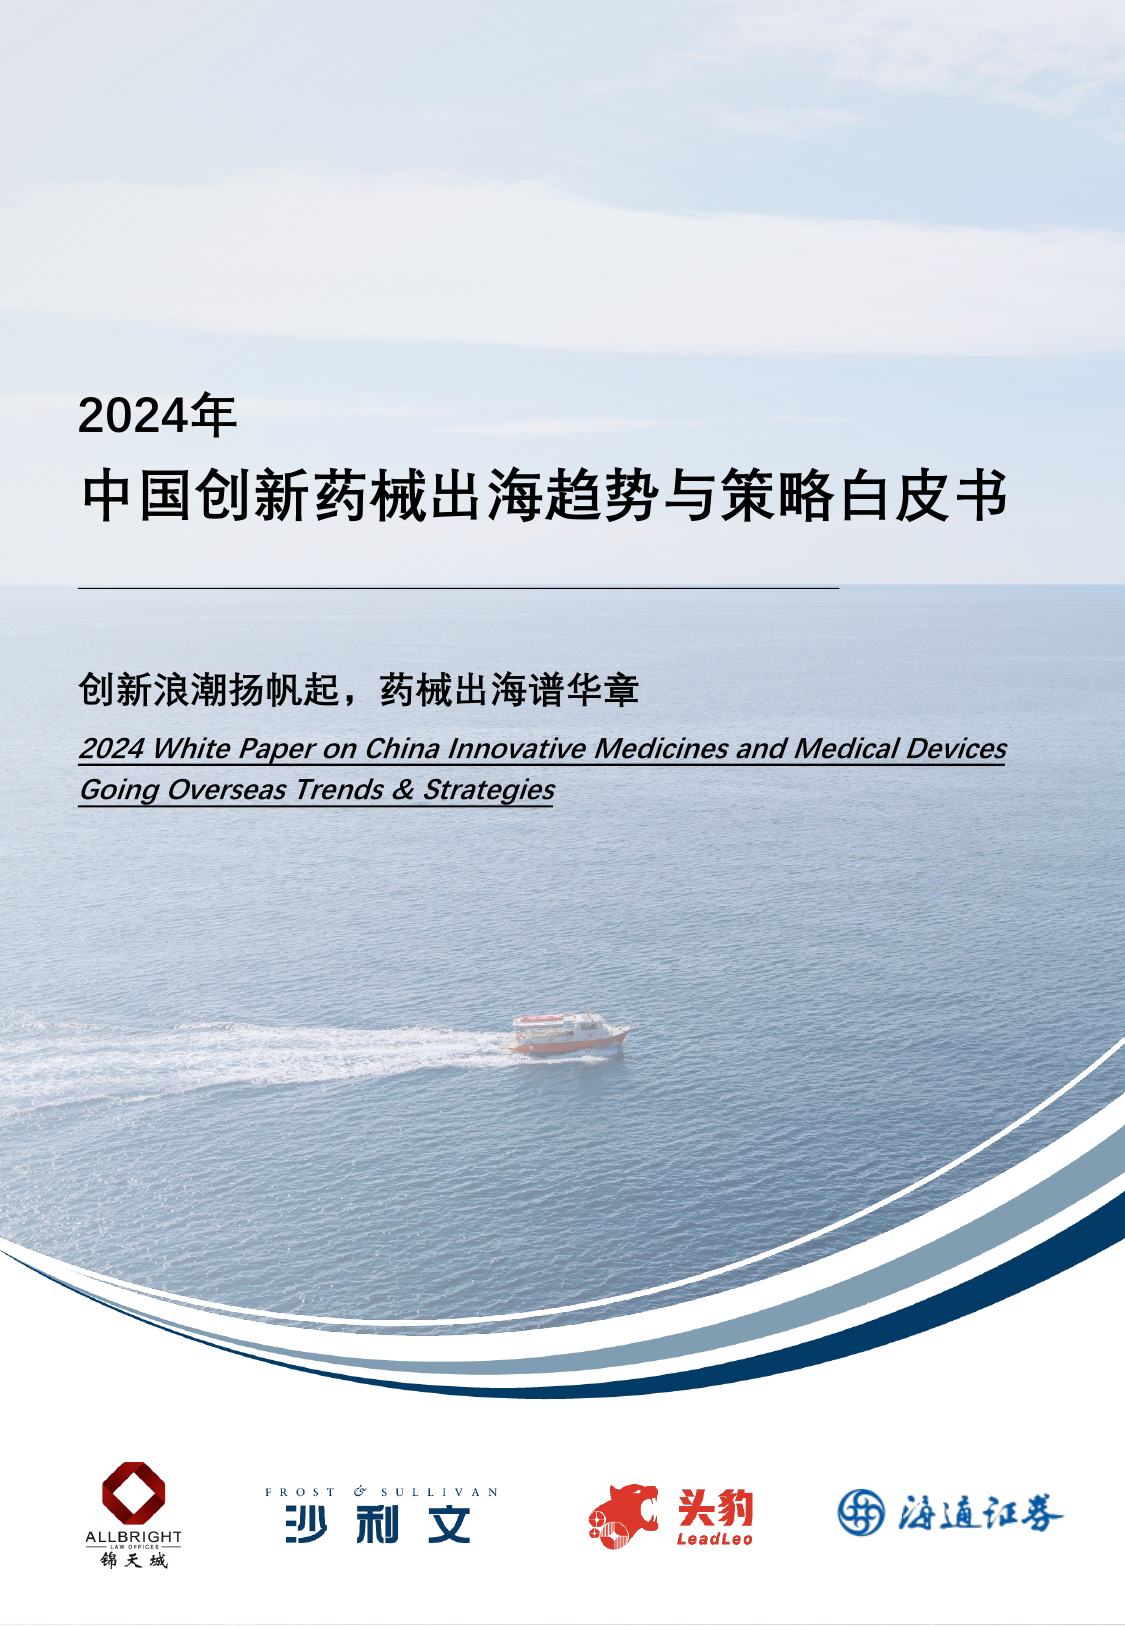 2024年中国创新药械出海趋势与策略白皮书-锦天城x海通证券x沙利文-202404.pdf